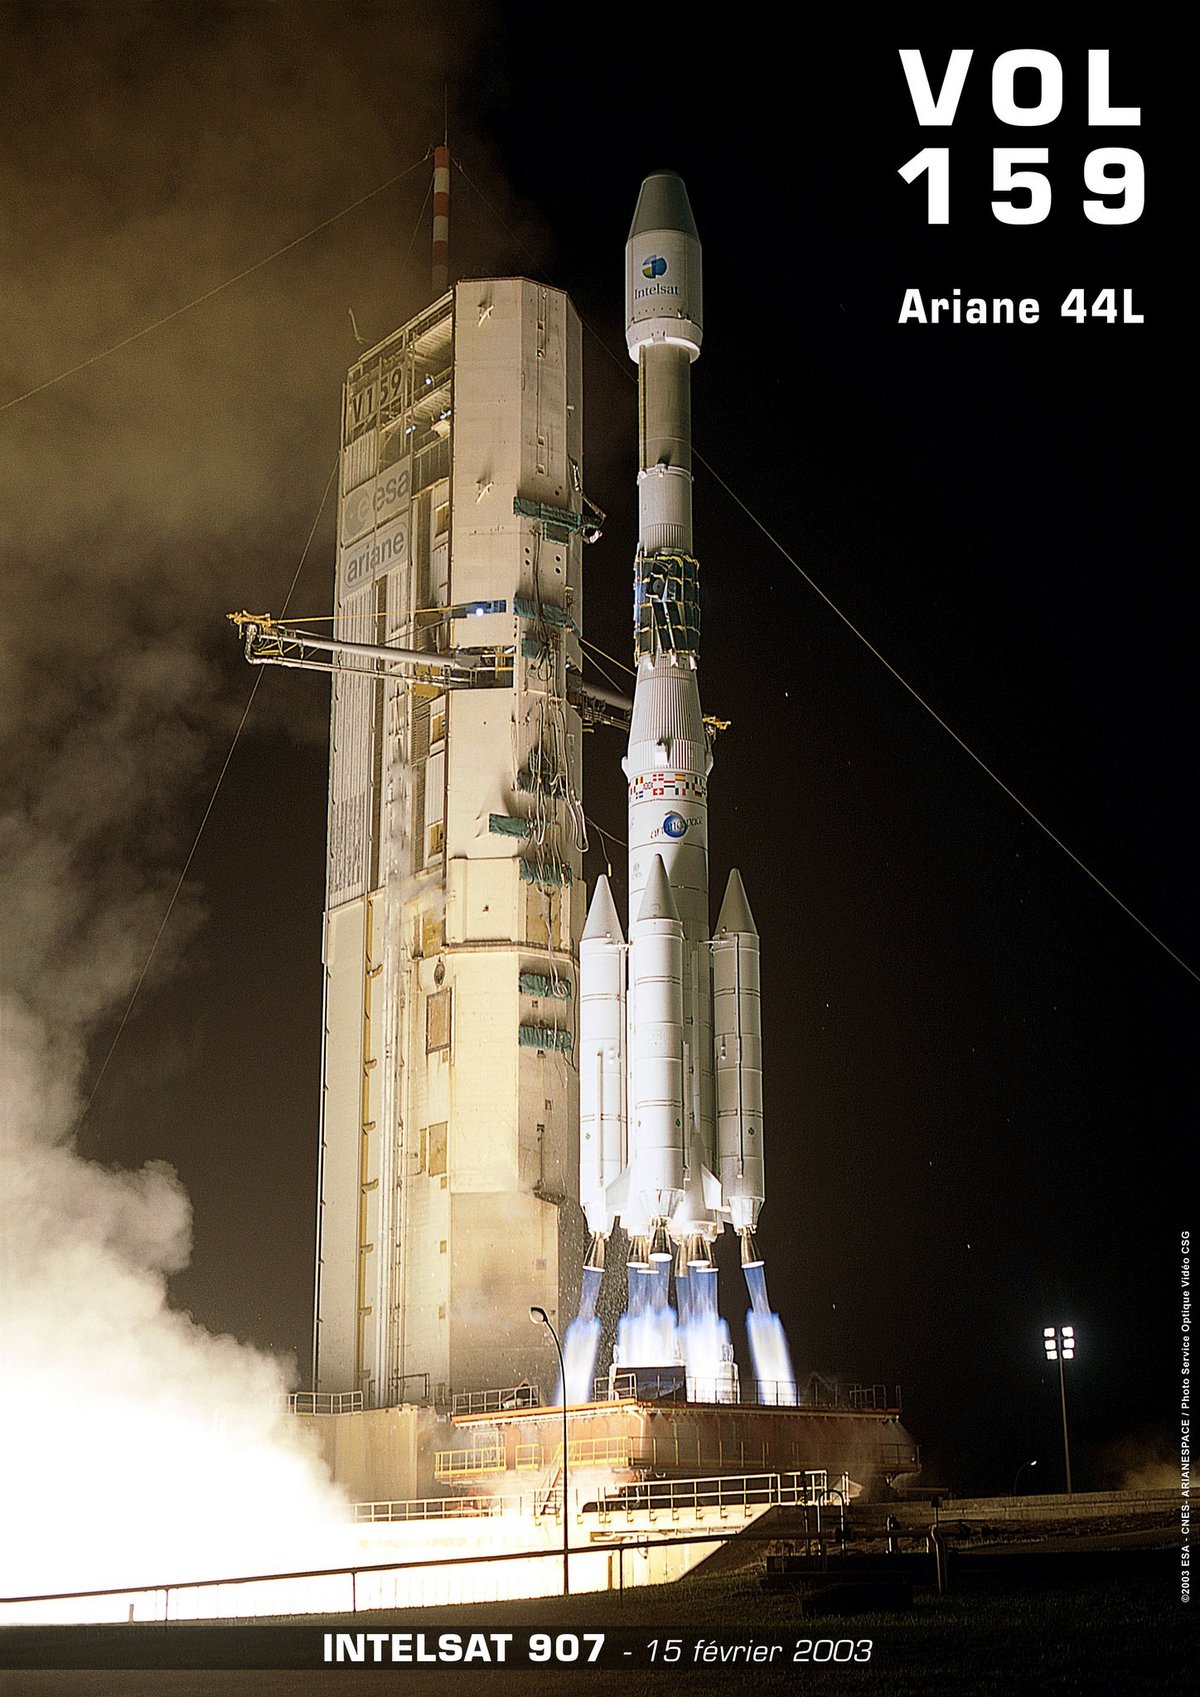 Le Vol 159, 116e vol pour Ariane 4, marquera la fin de sa carrière commerciale. La version Ariane 44L sera la plus populaire, permettant d&#039;envoyer en orbite des satellites géostationnaires de plus en plus lourds. Crédits: CNES / ESA